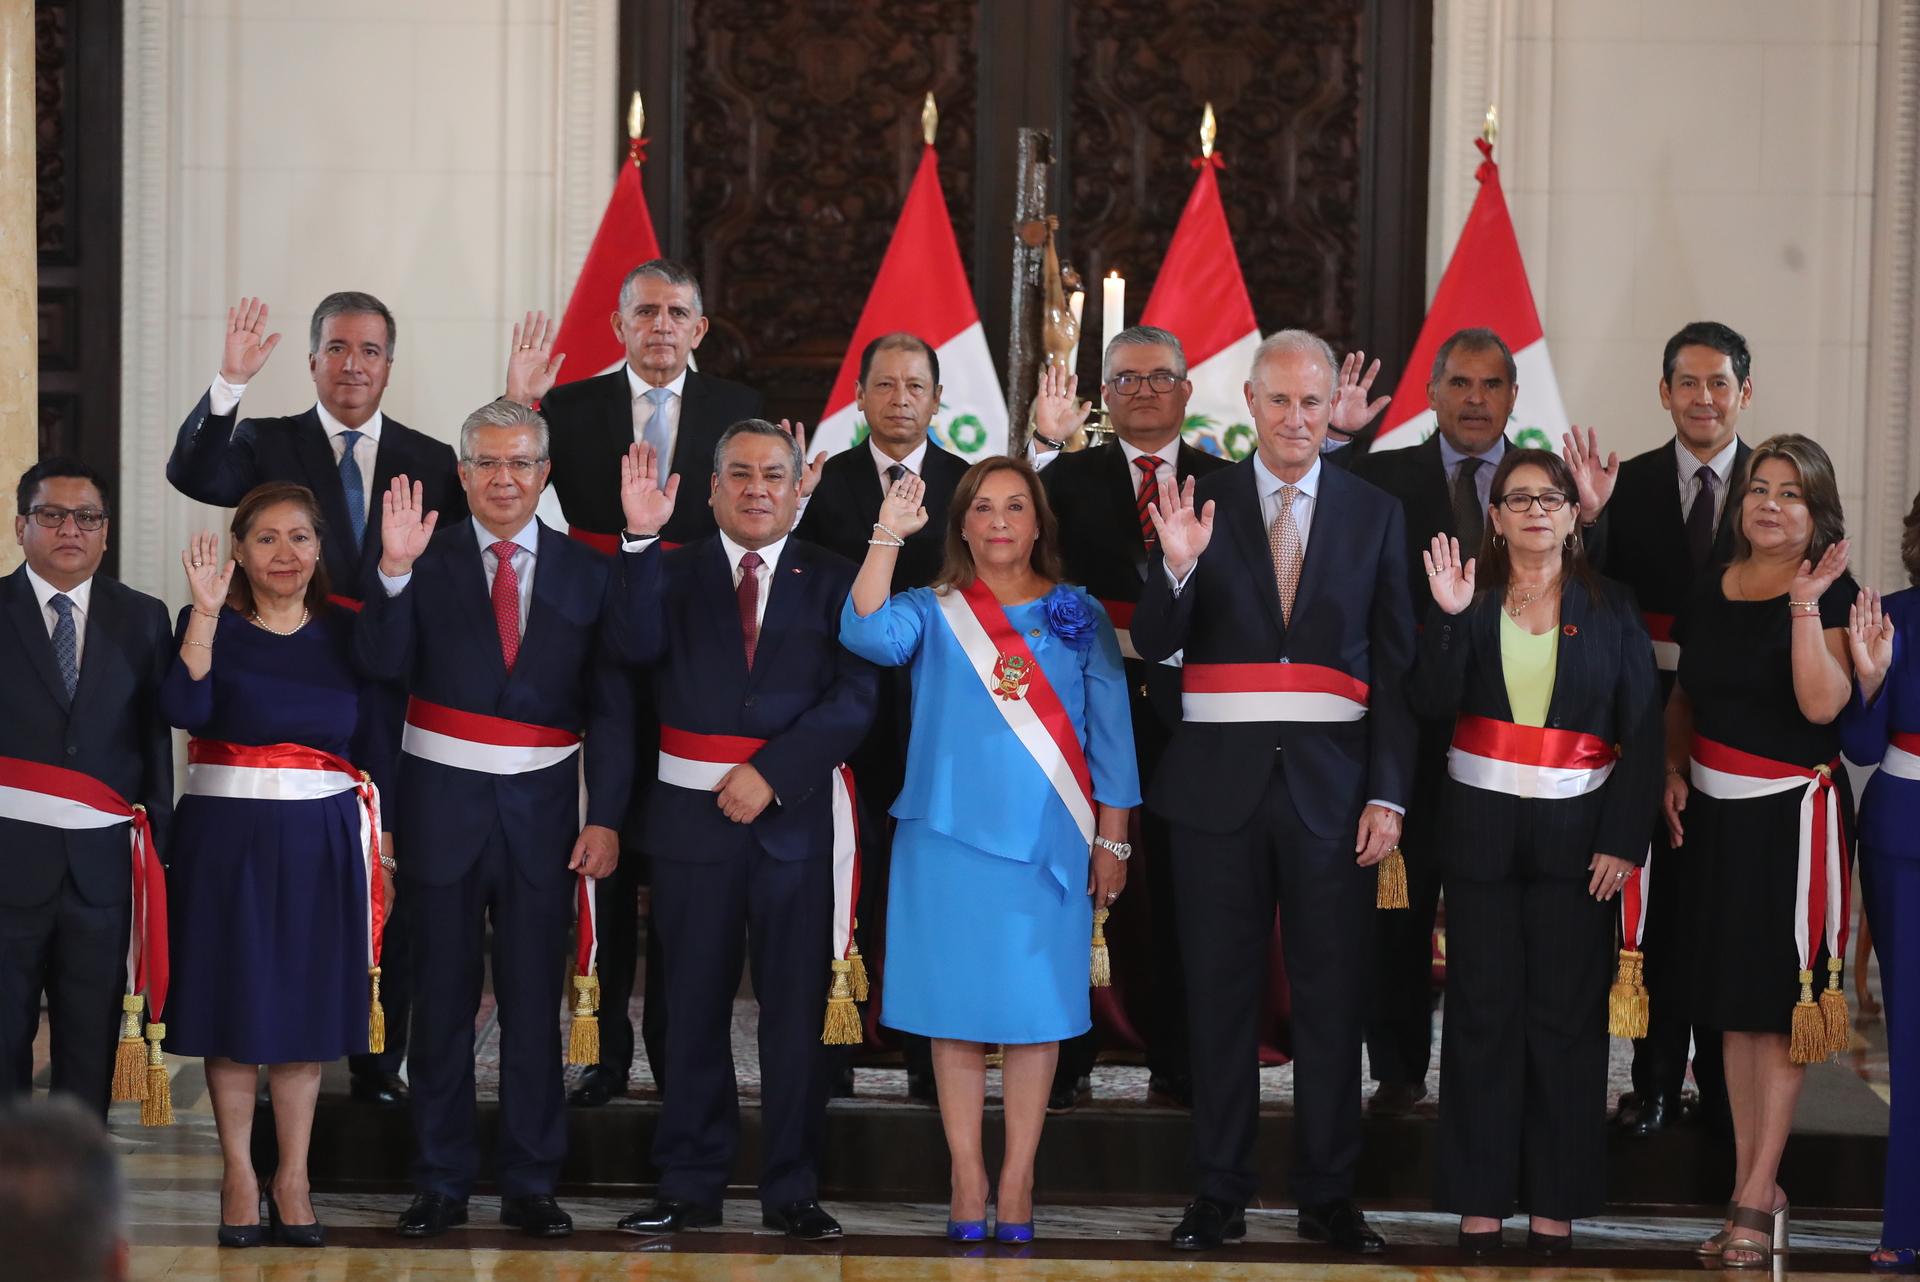 Presidenta de Perú recibió 300 mil dólares entre 2016 y 2022